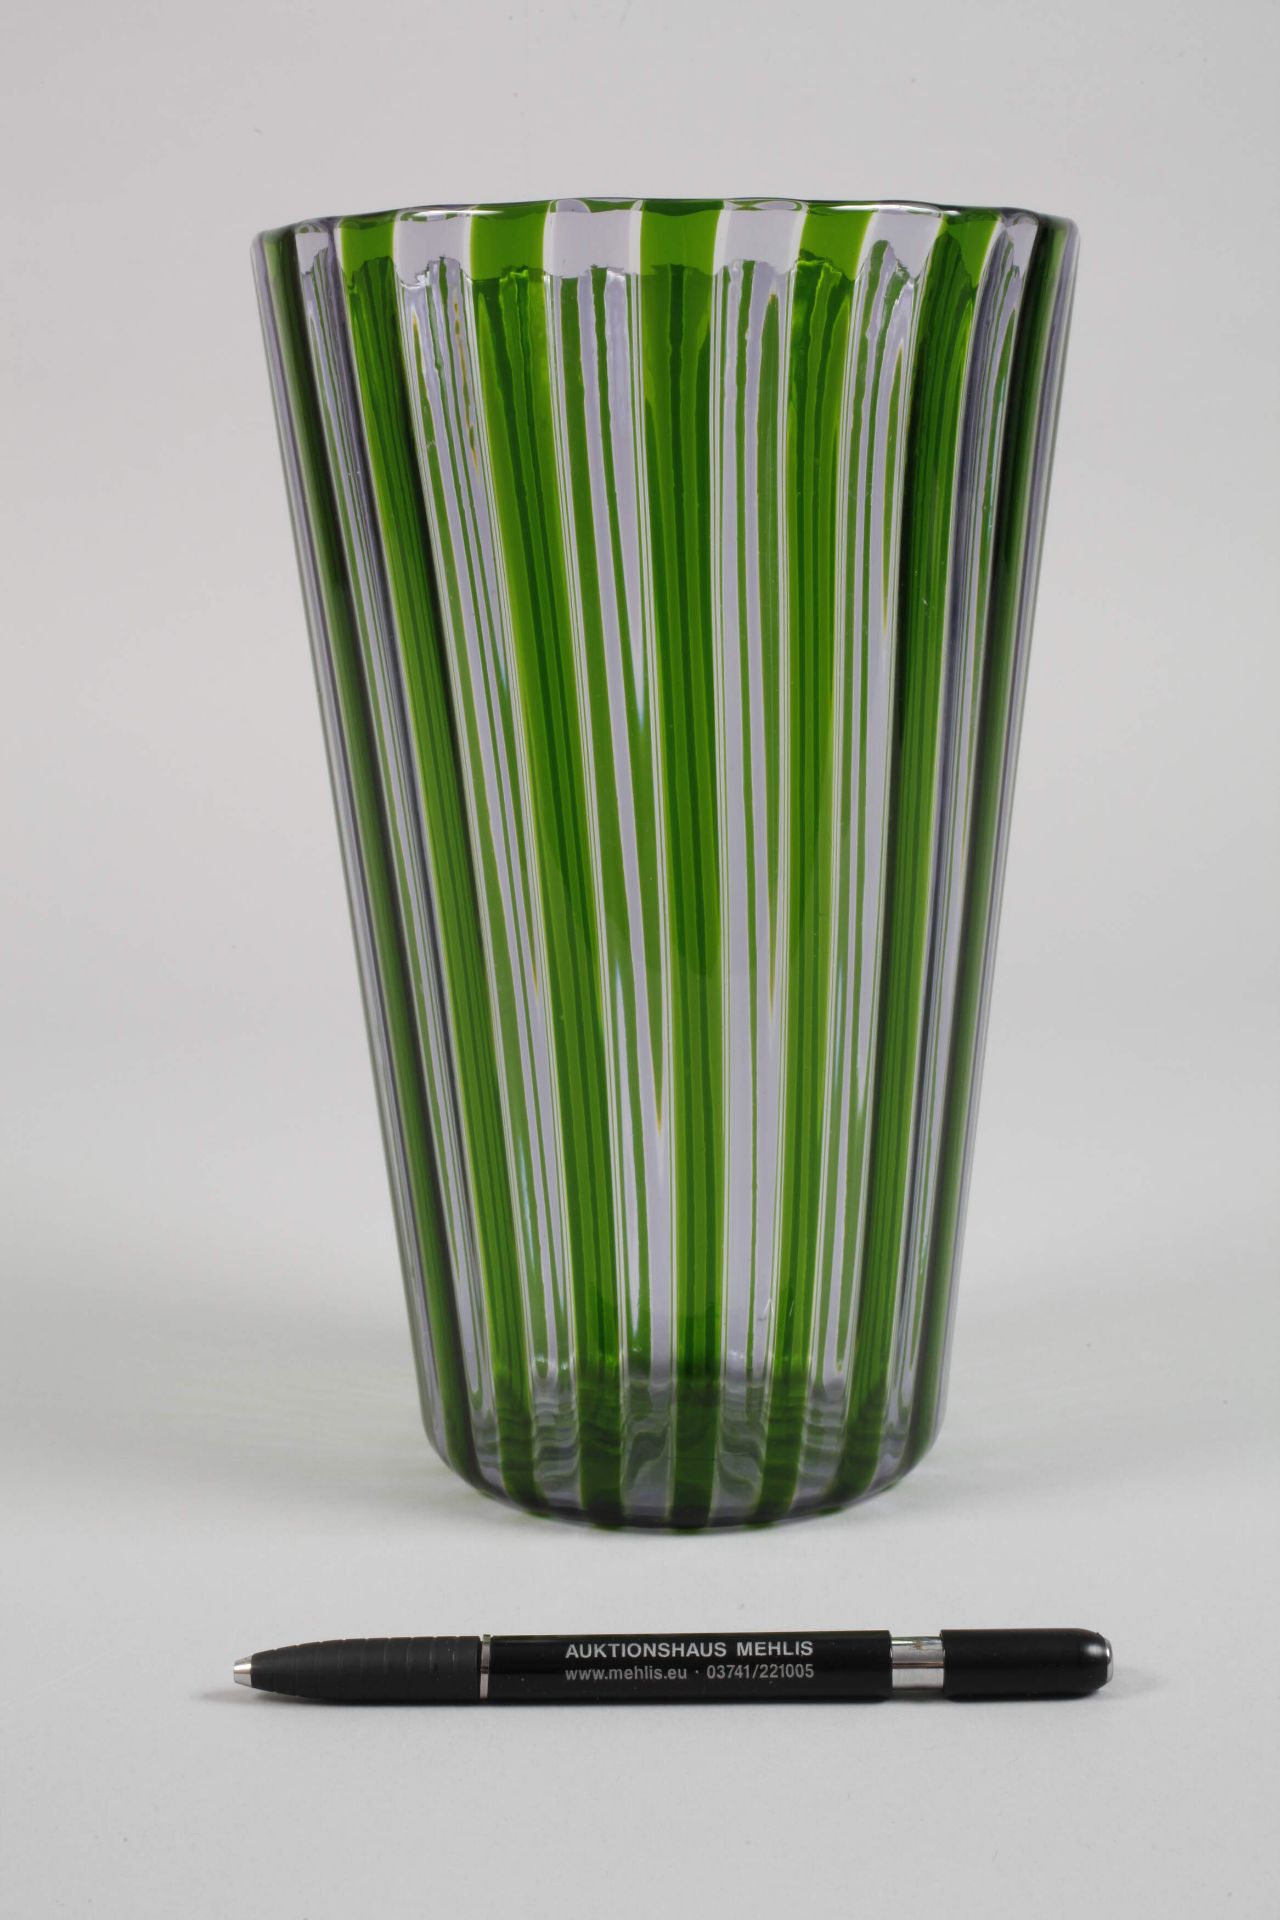 Venini Murano goblet vase - Image 2 of 6